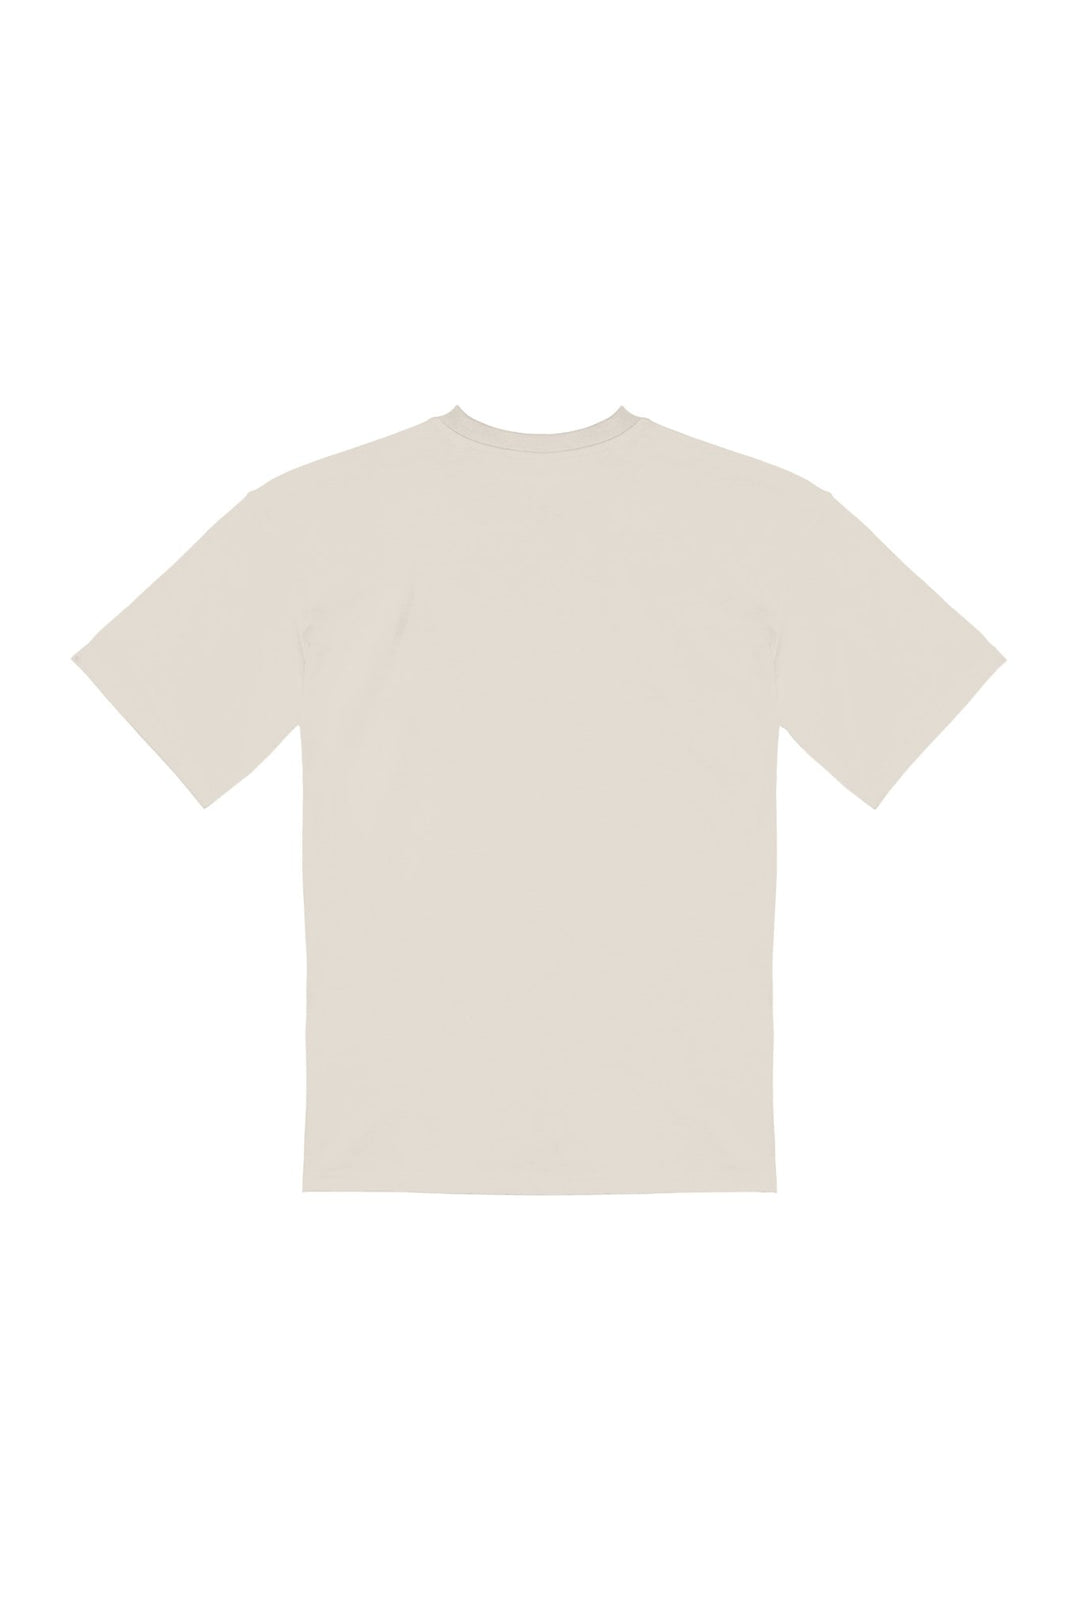 BÉBEL・T-shirt unisexe・Sable - Le Cartel